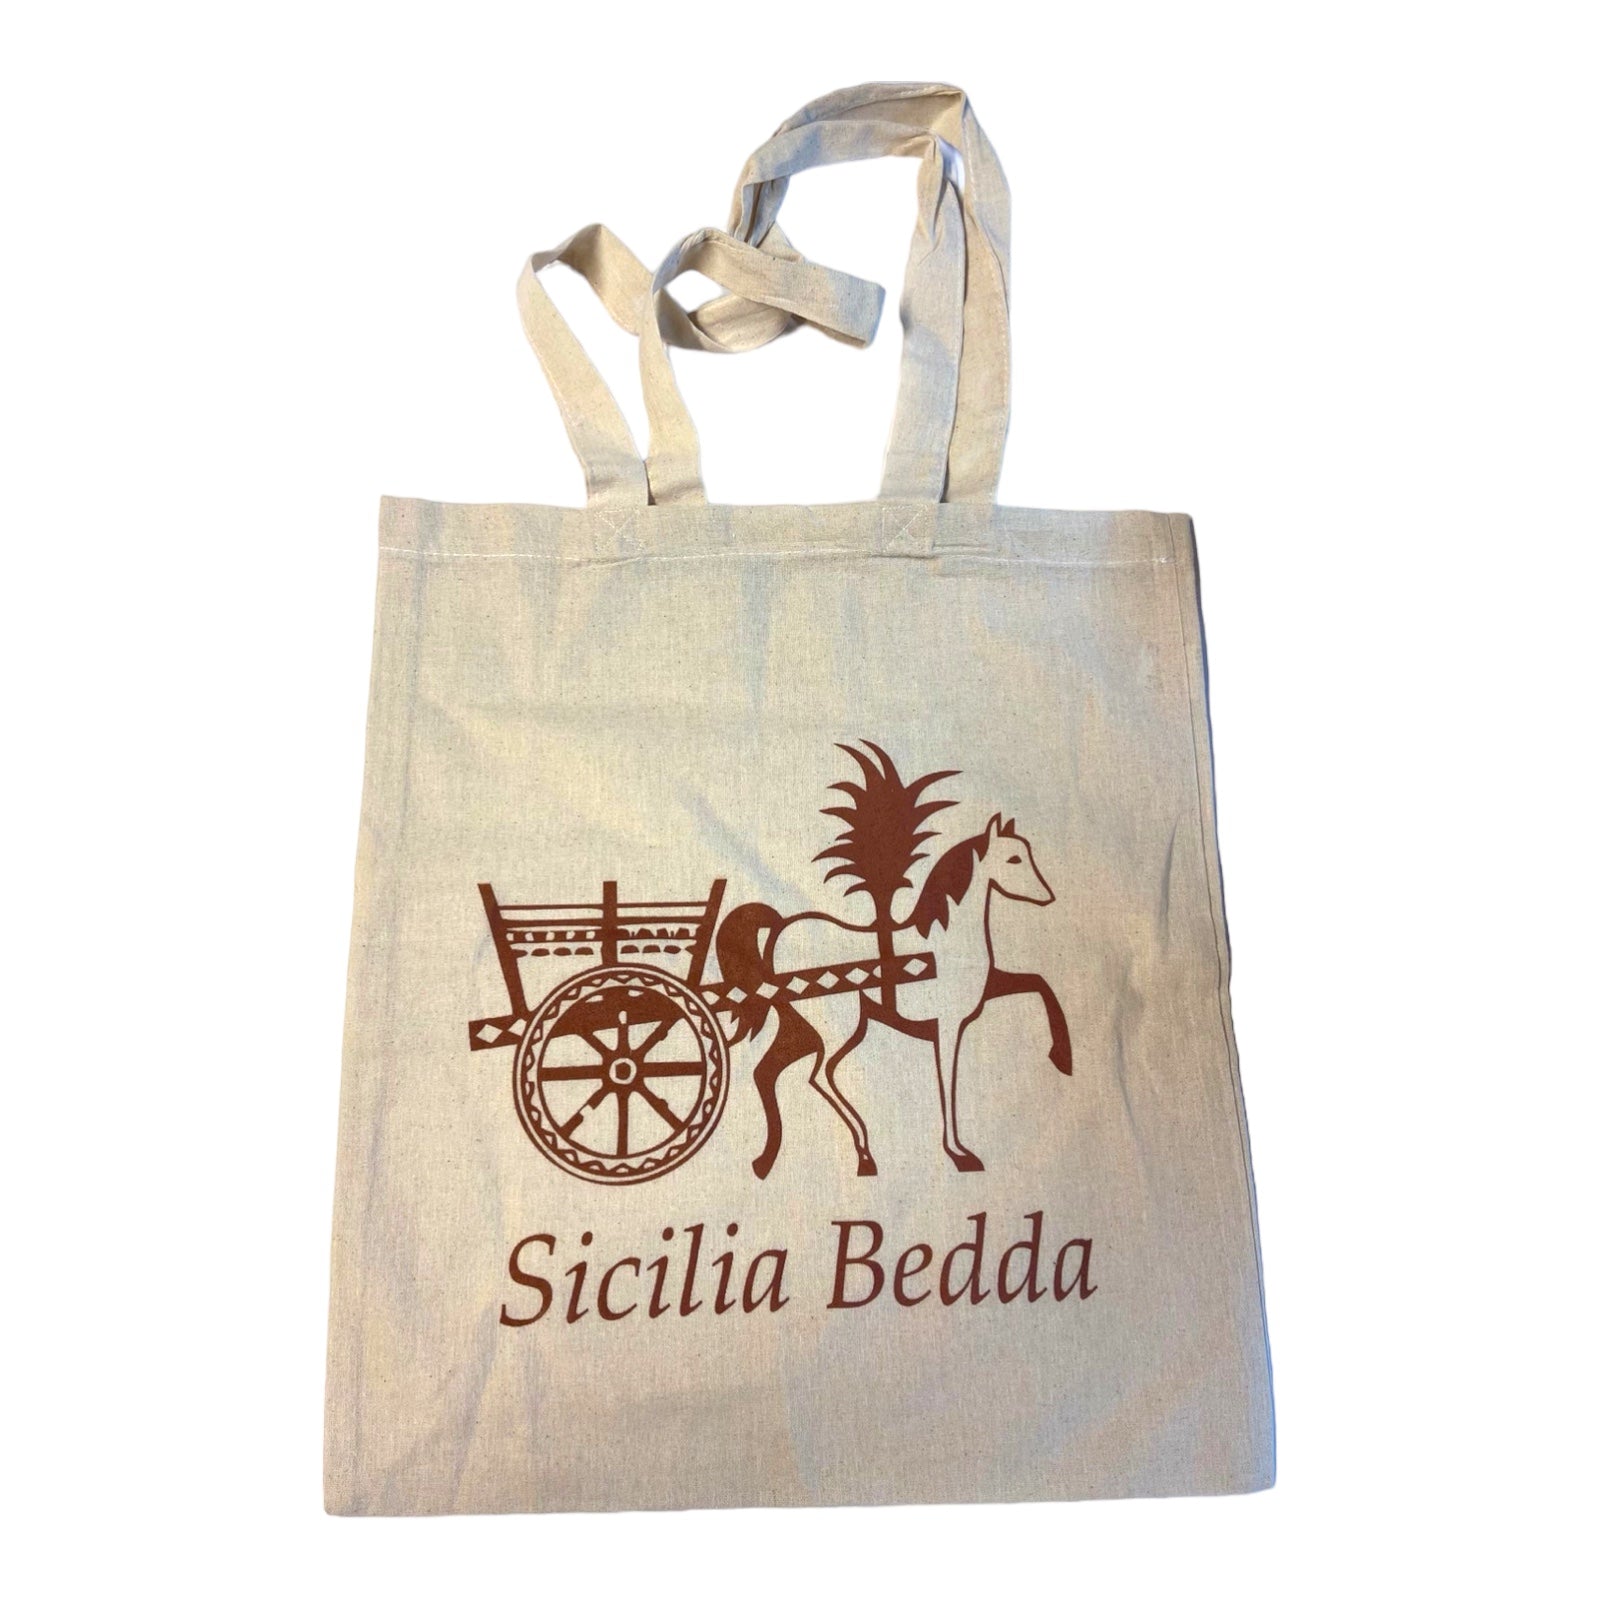 Sicilia Bedda With Carretto Tote Bag 100% Cotton